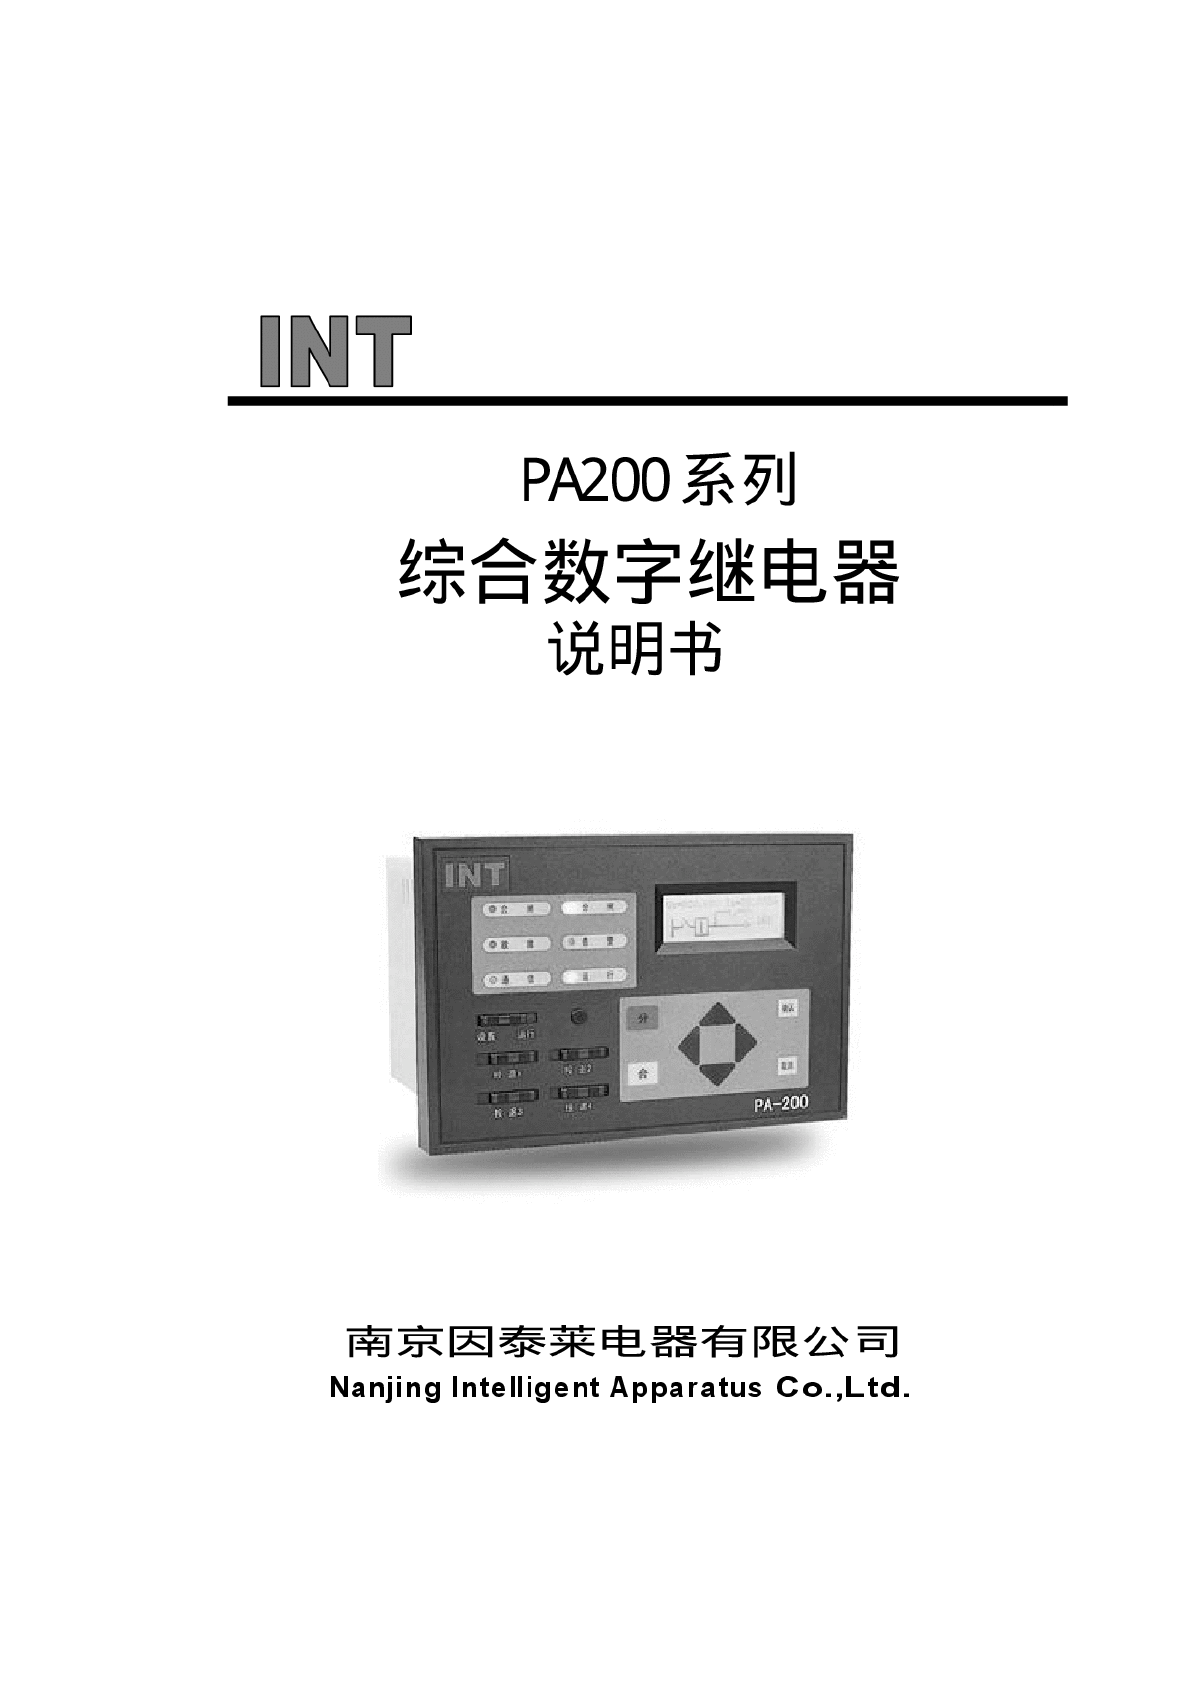 PA200技术及使用说明书